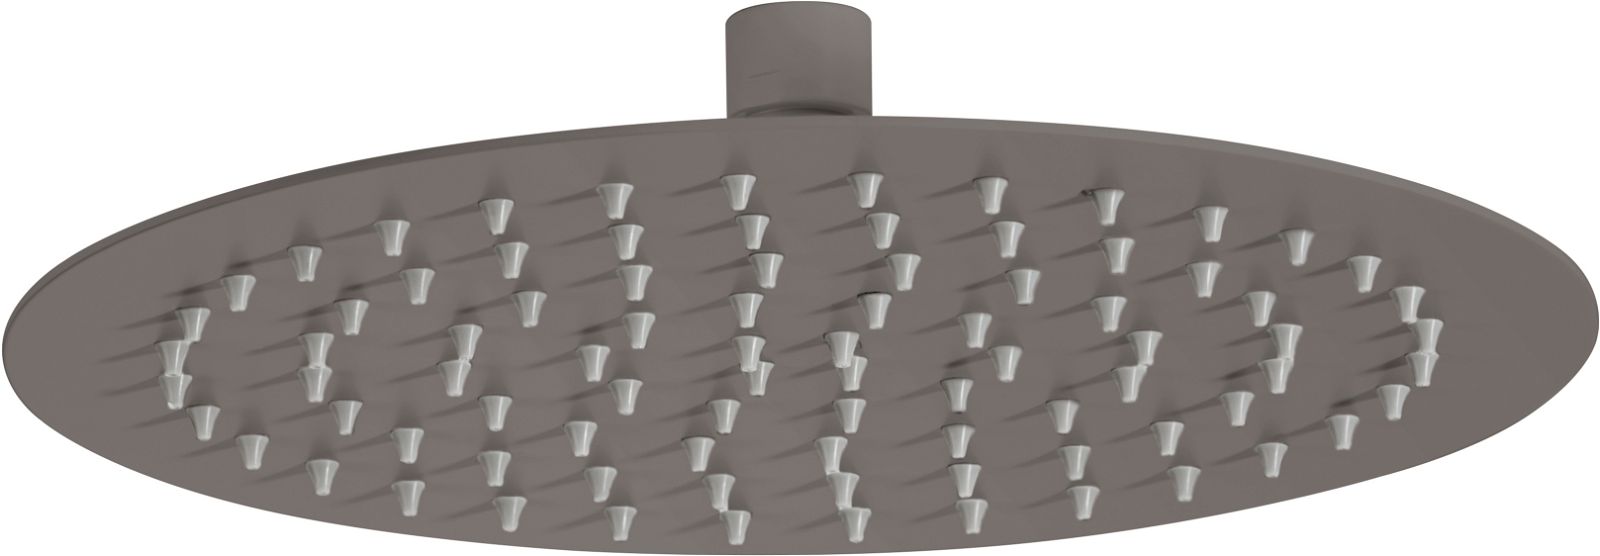 Shower head, round - 250 mm - NAC_D10K - Główne zdjęcie produktowe